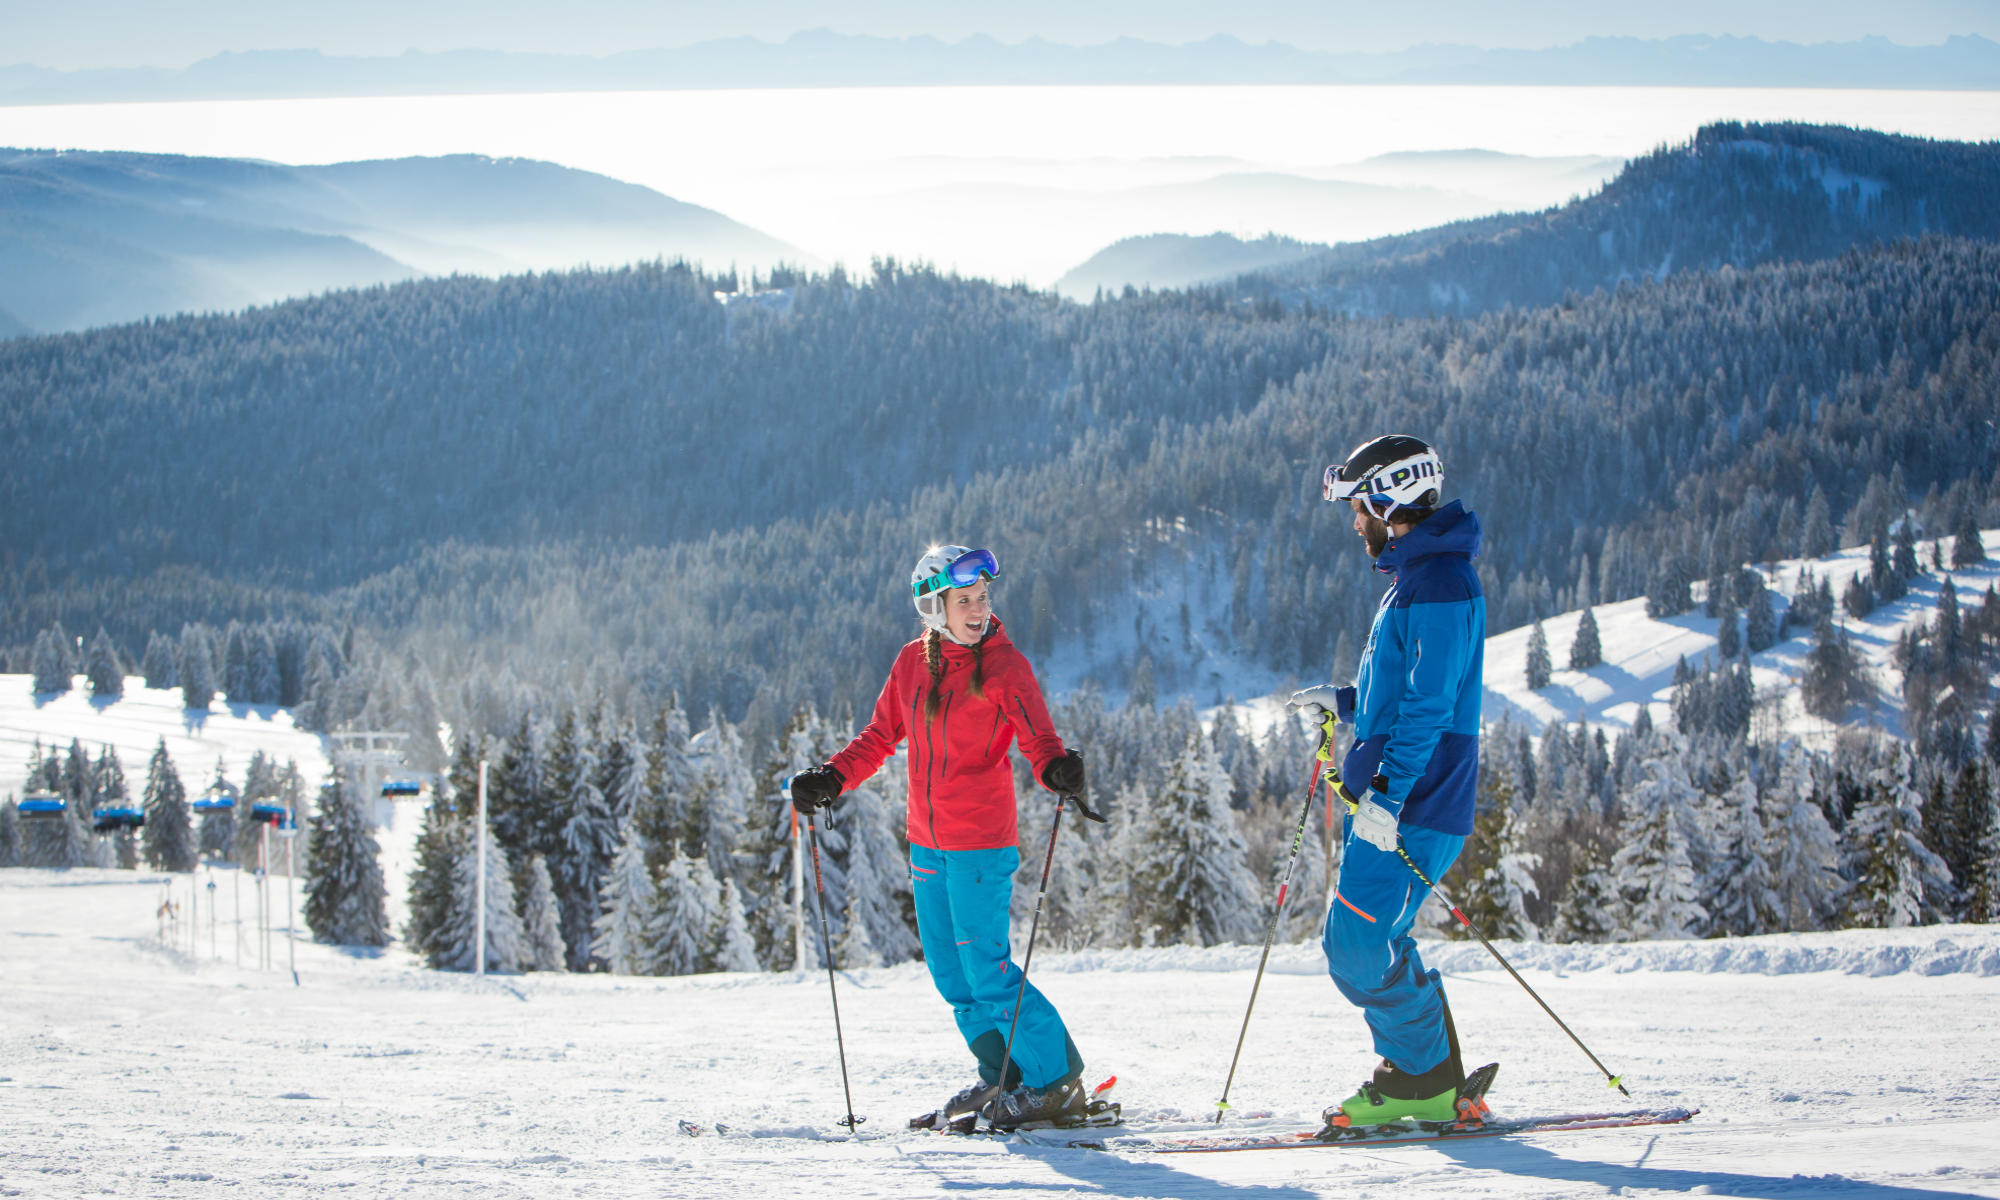 skiën de top goedkope skigebieden